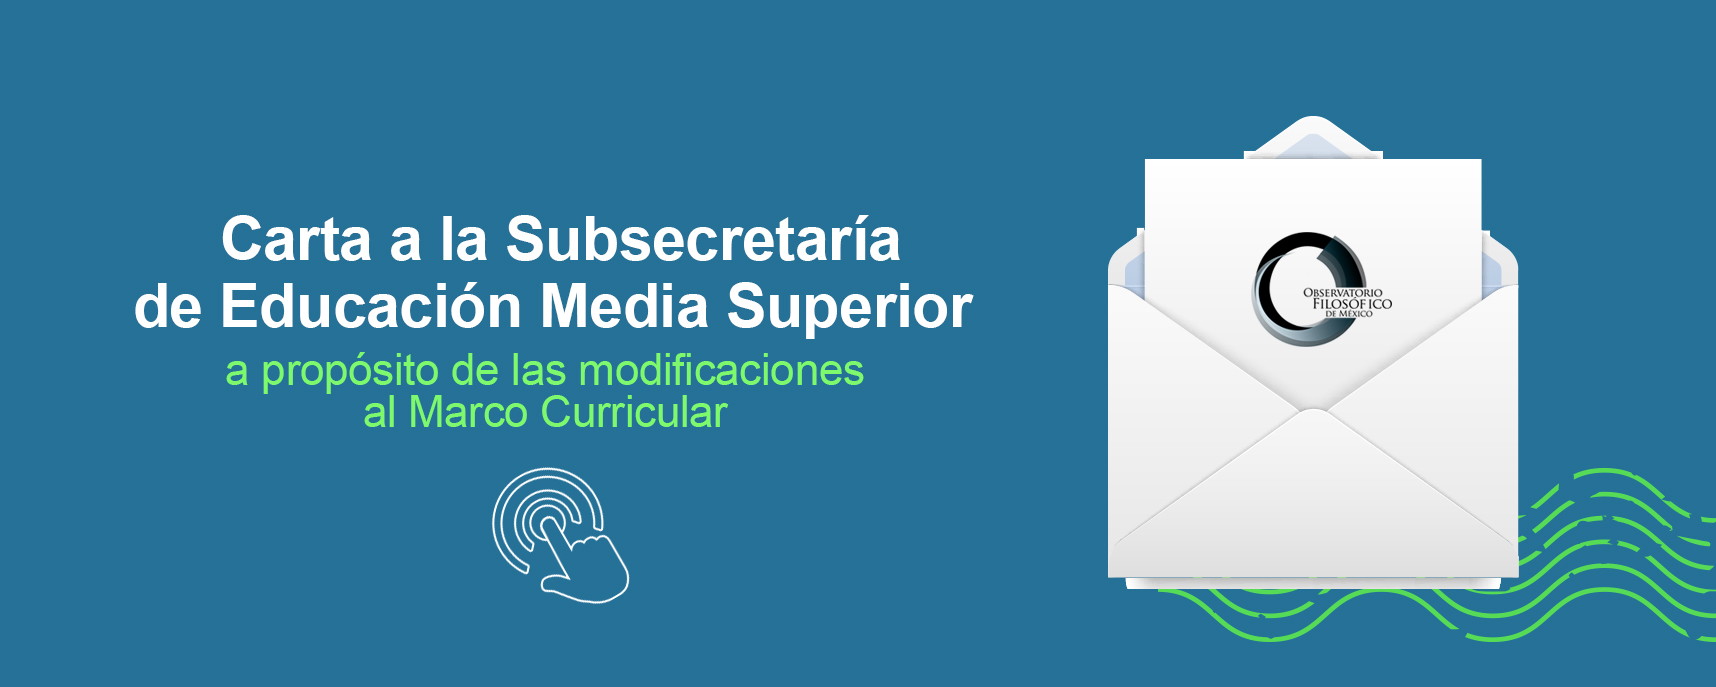 Carta a la Subsecretaría de Educación Media Superior